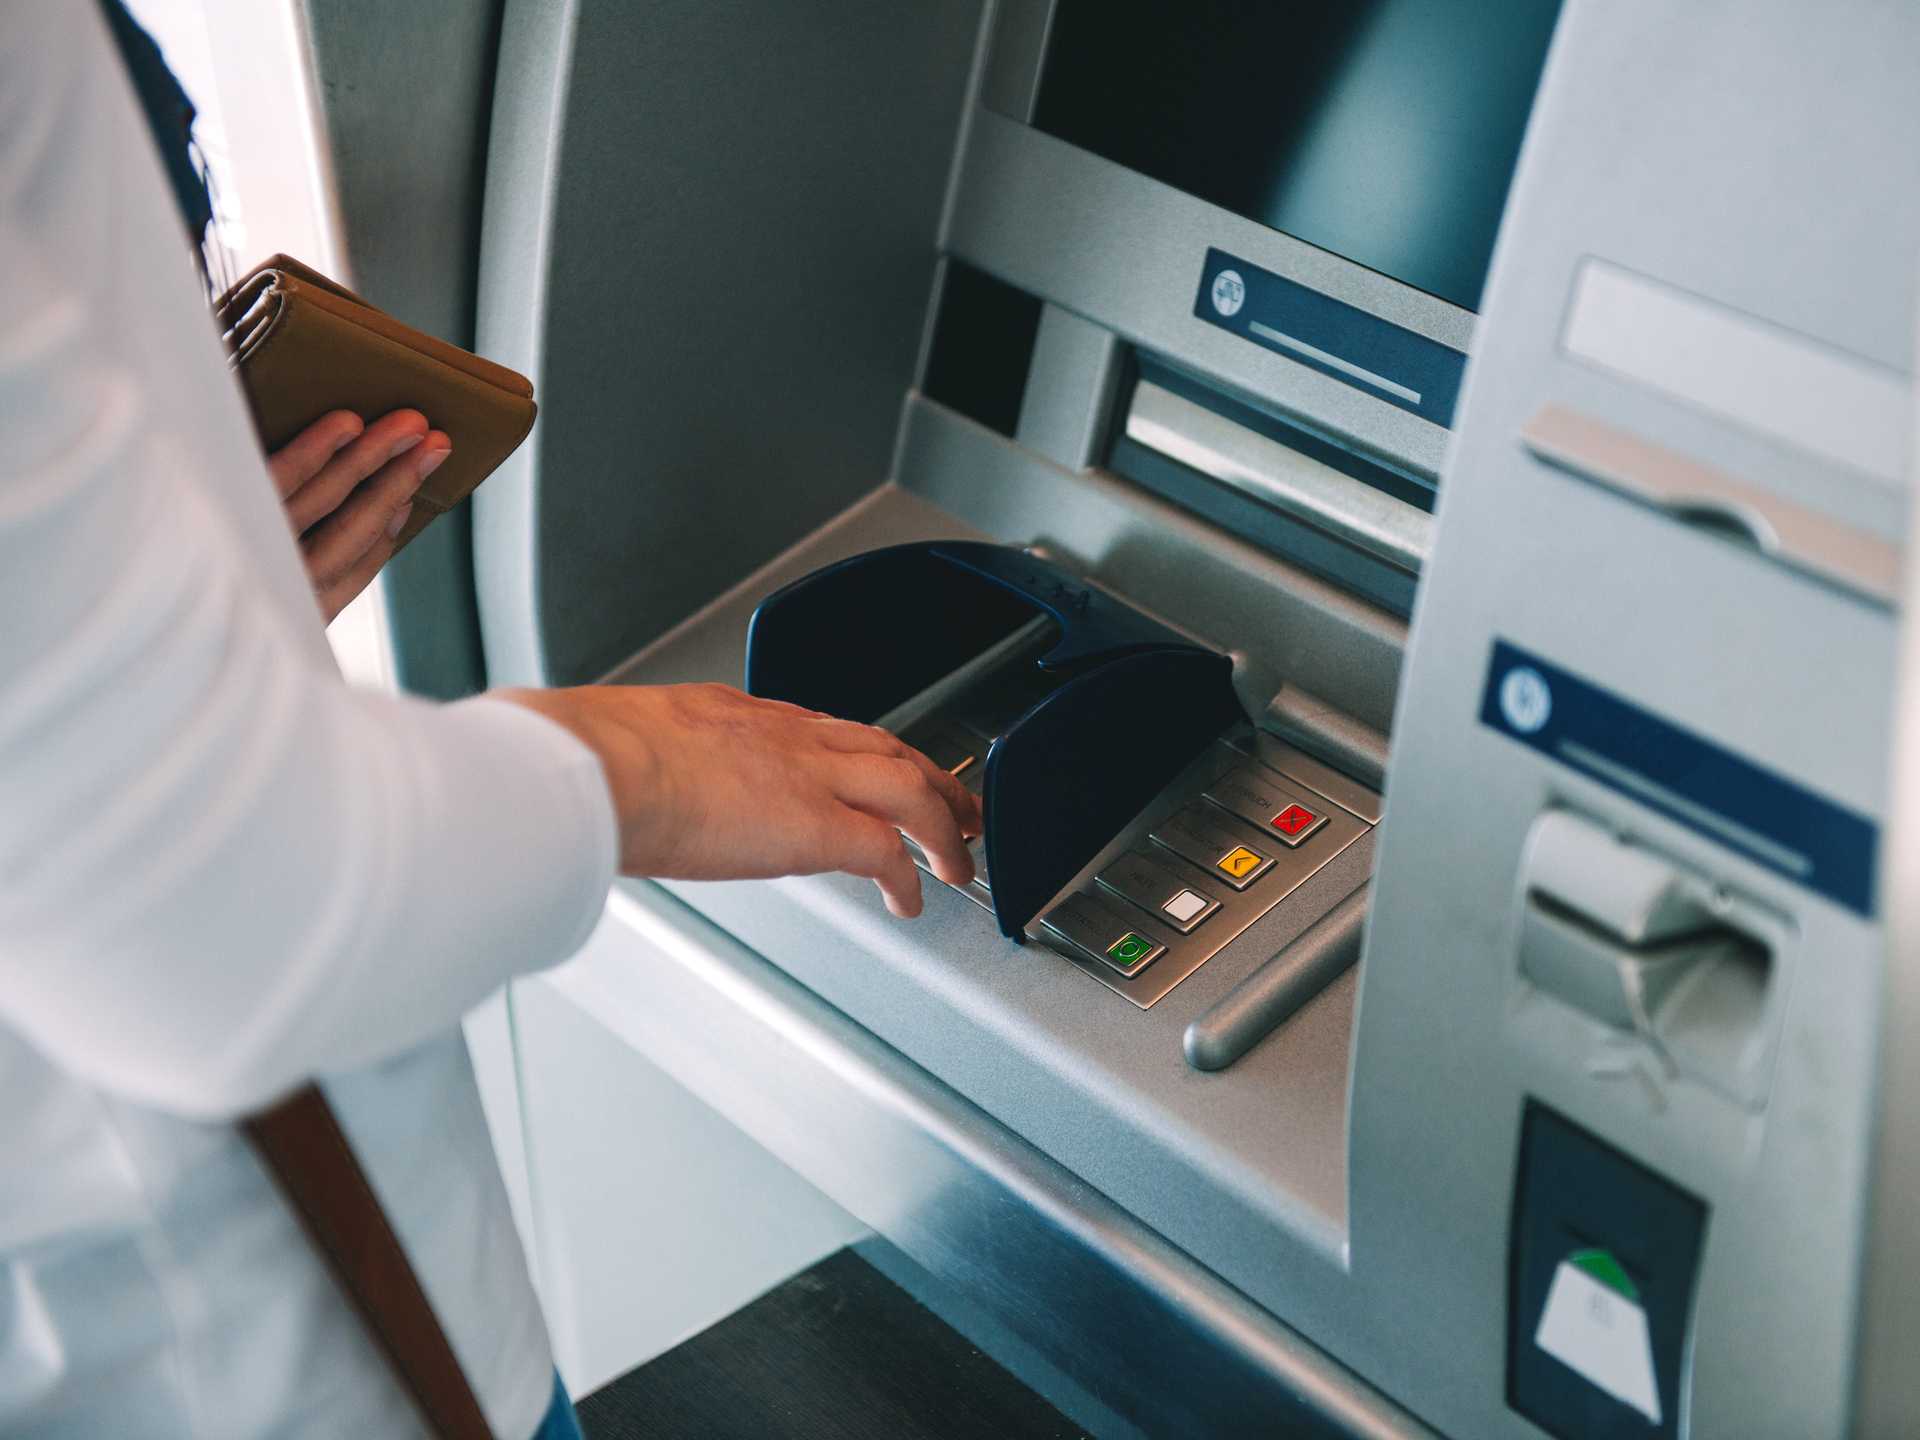 Юрист пояснила важность сохранения чеков из банкомата